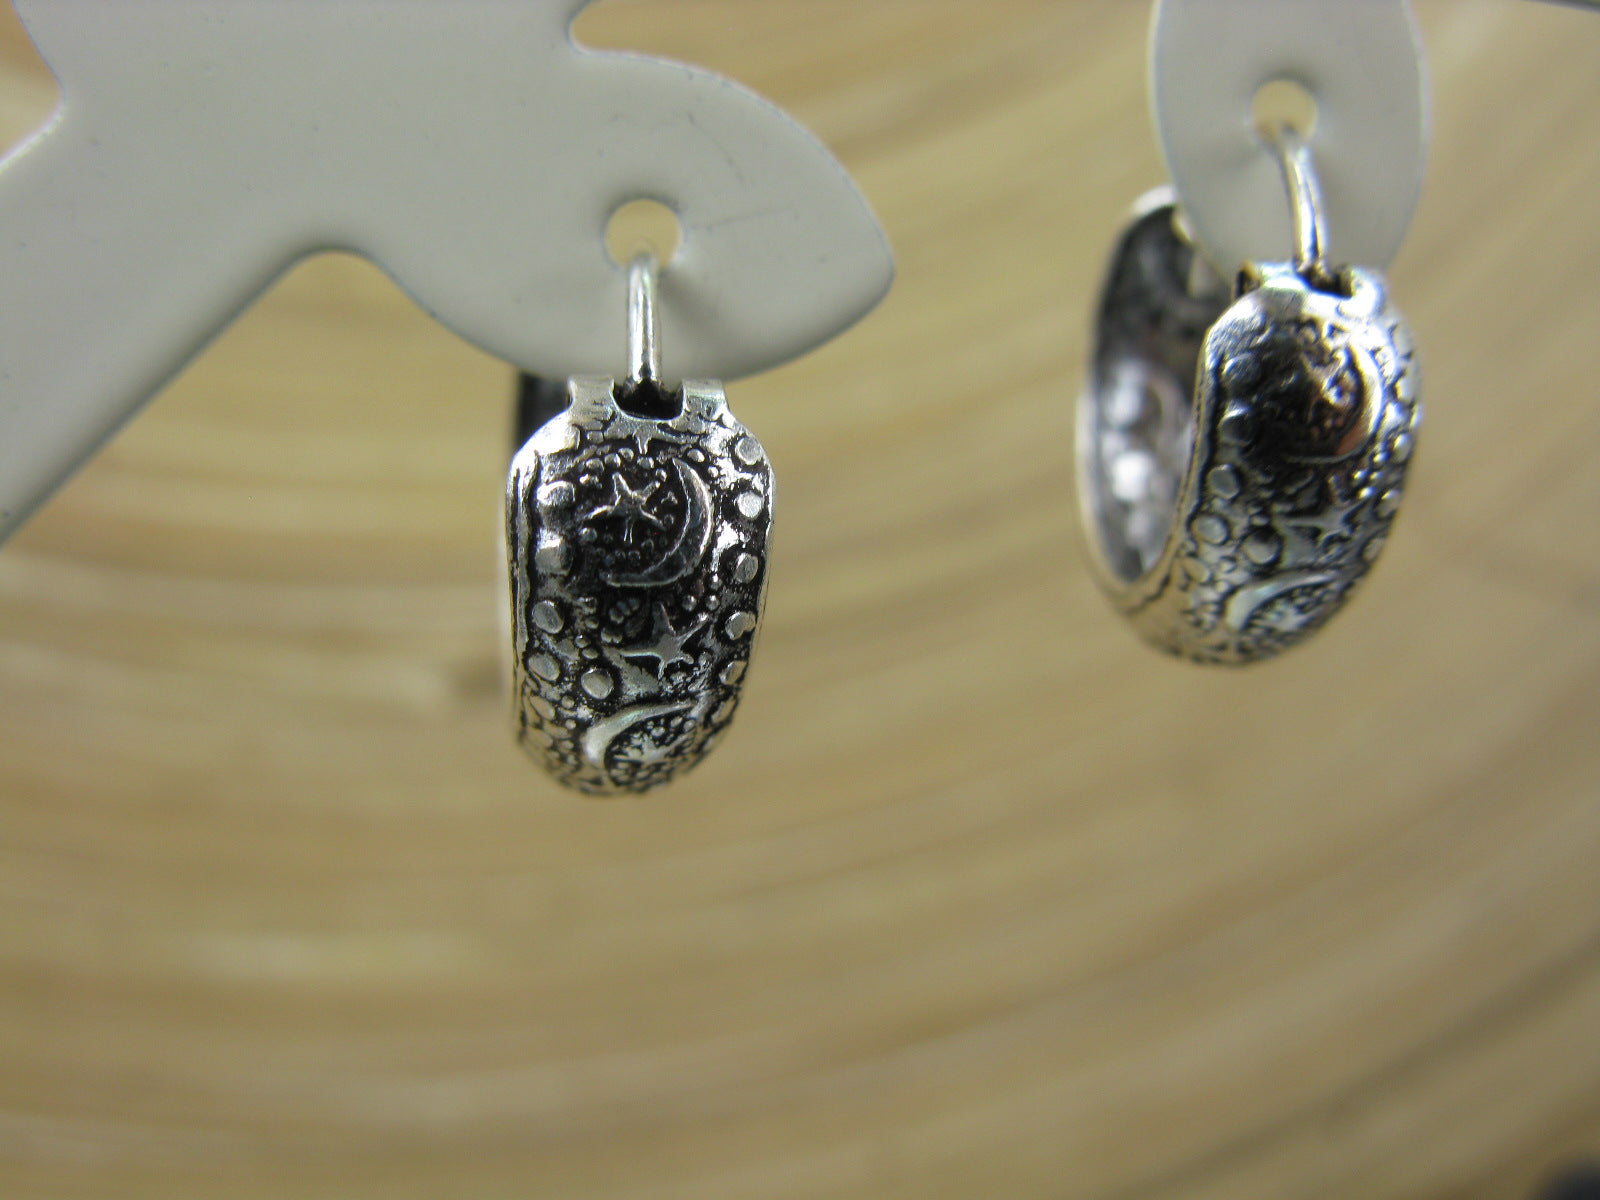 Balinese Engraved Oxidized 15mm Hoop Earrings in 925 Sterling Silver